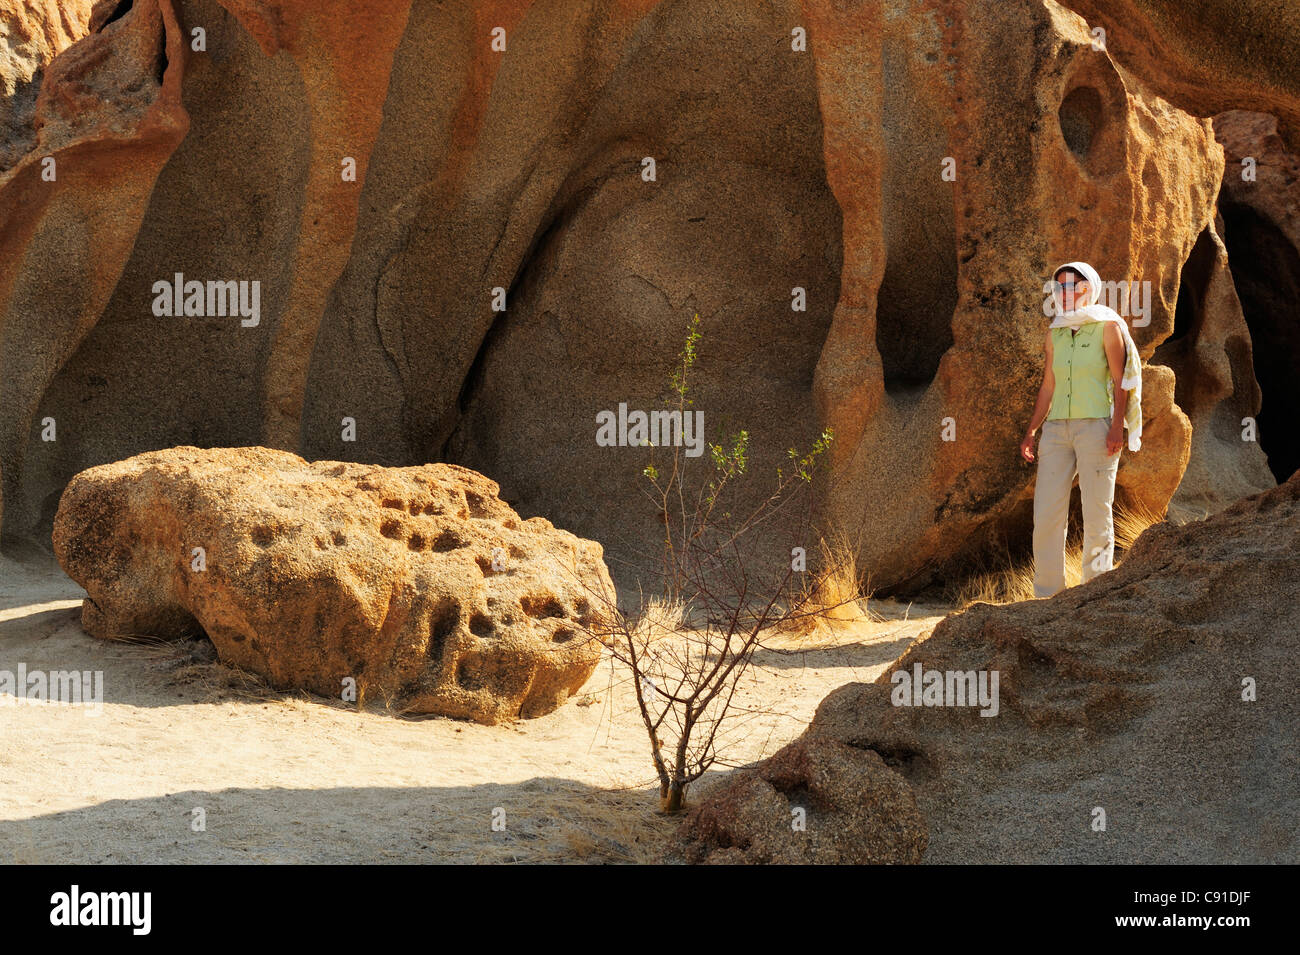 Woman walking through rock with bizarre eolian erosion, Namib desert, Namib, Namibia Stock Photo